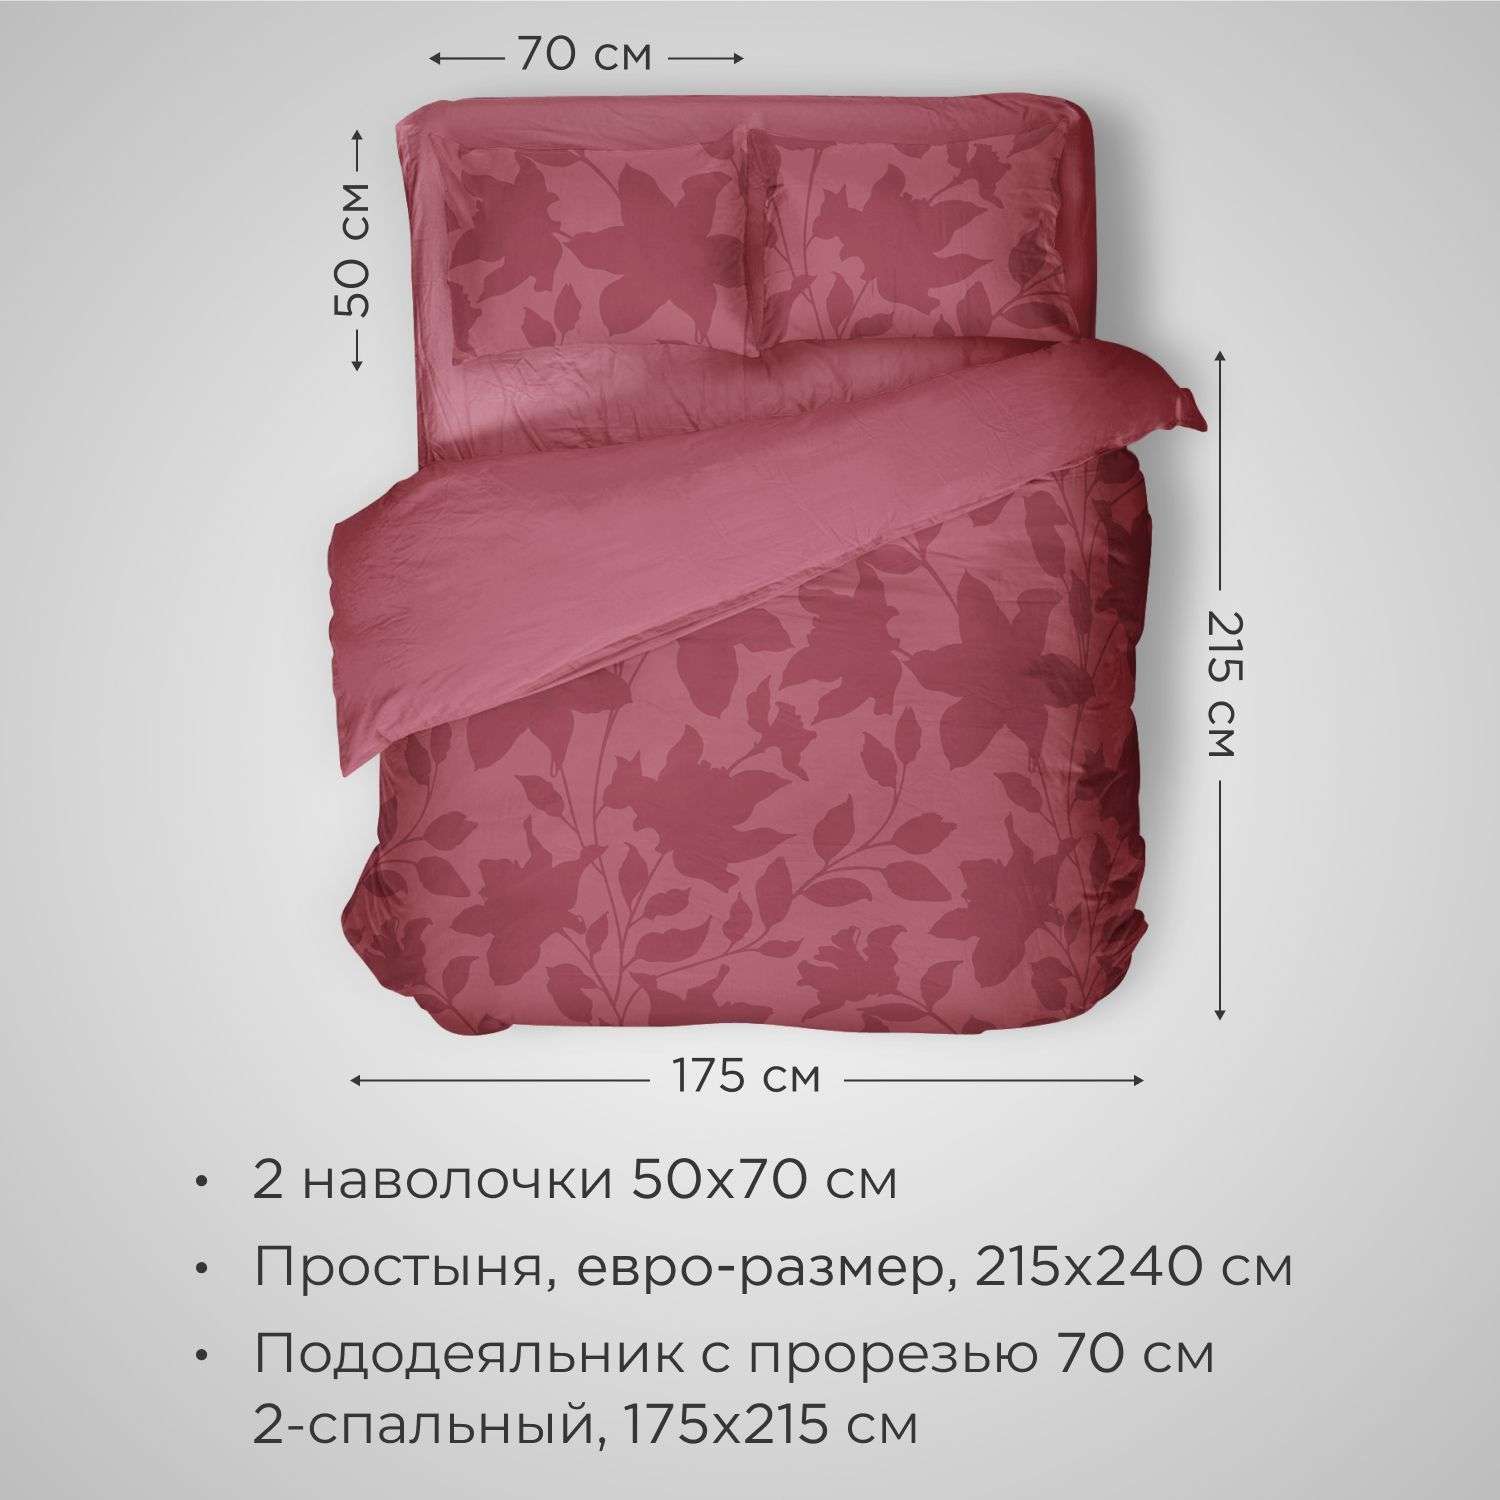 Комплект постельного белья SONNO URBAN FLOWERS 2-спальный цвет Цветы светлый гранат - фото 2